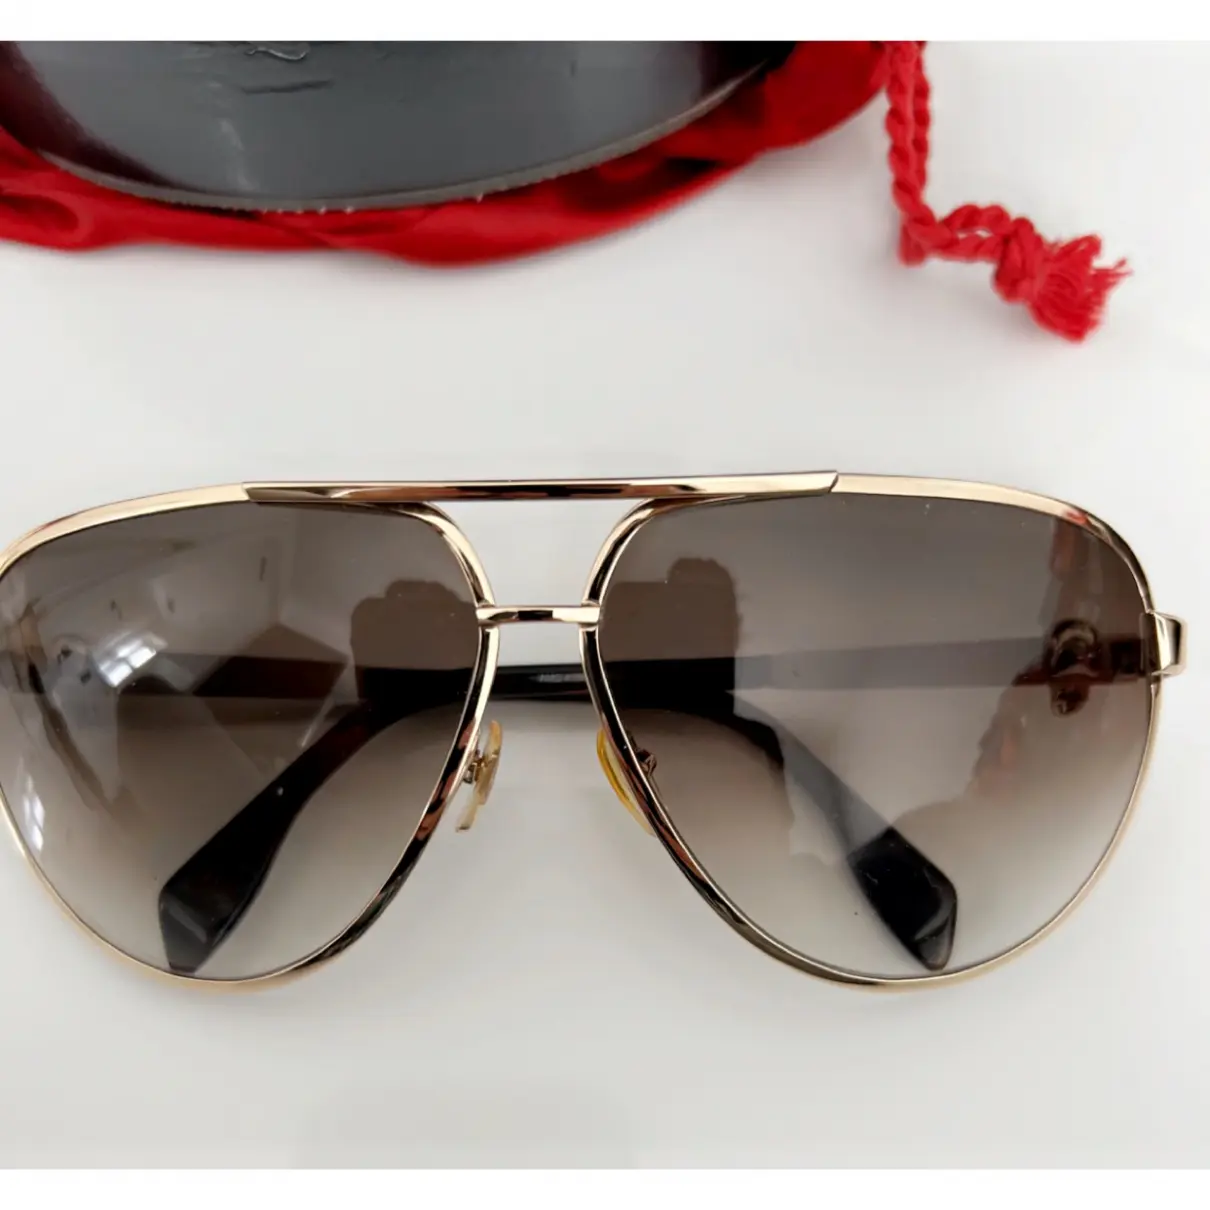 Buy Alexander McQueen Sunglasses online